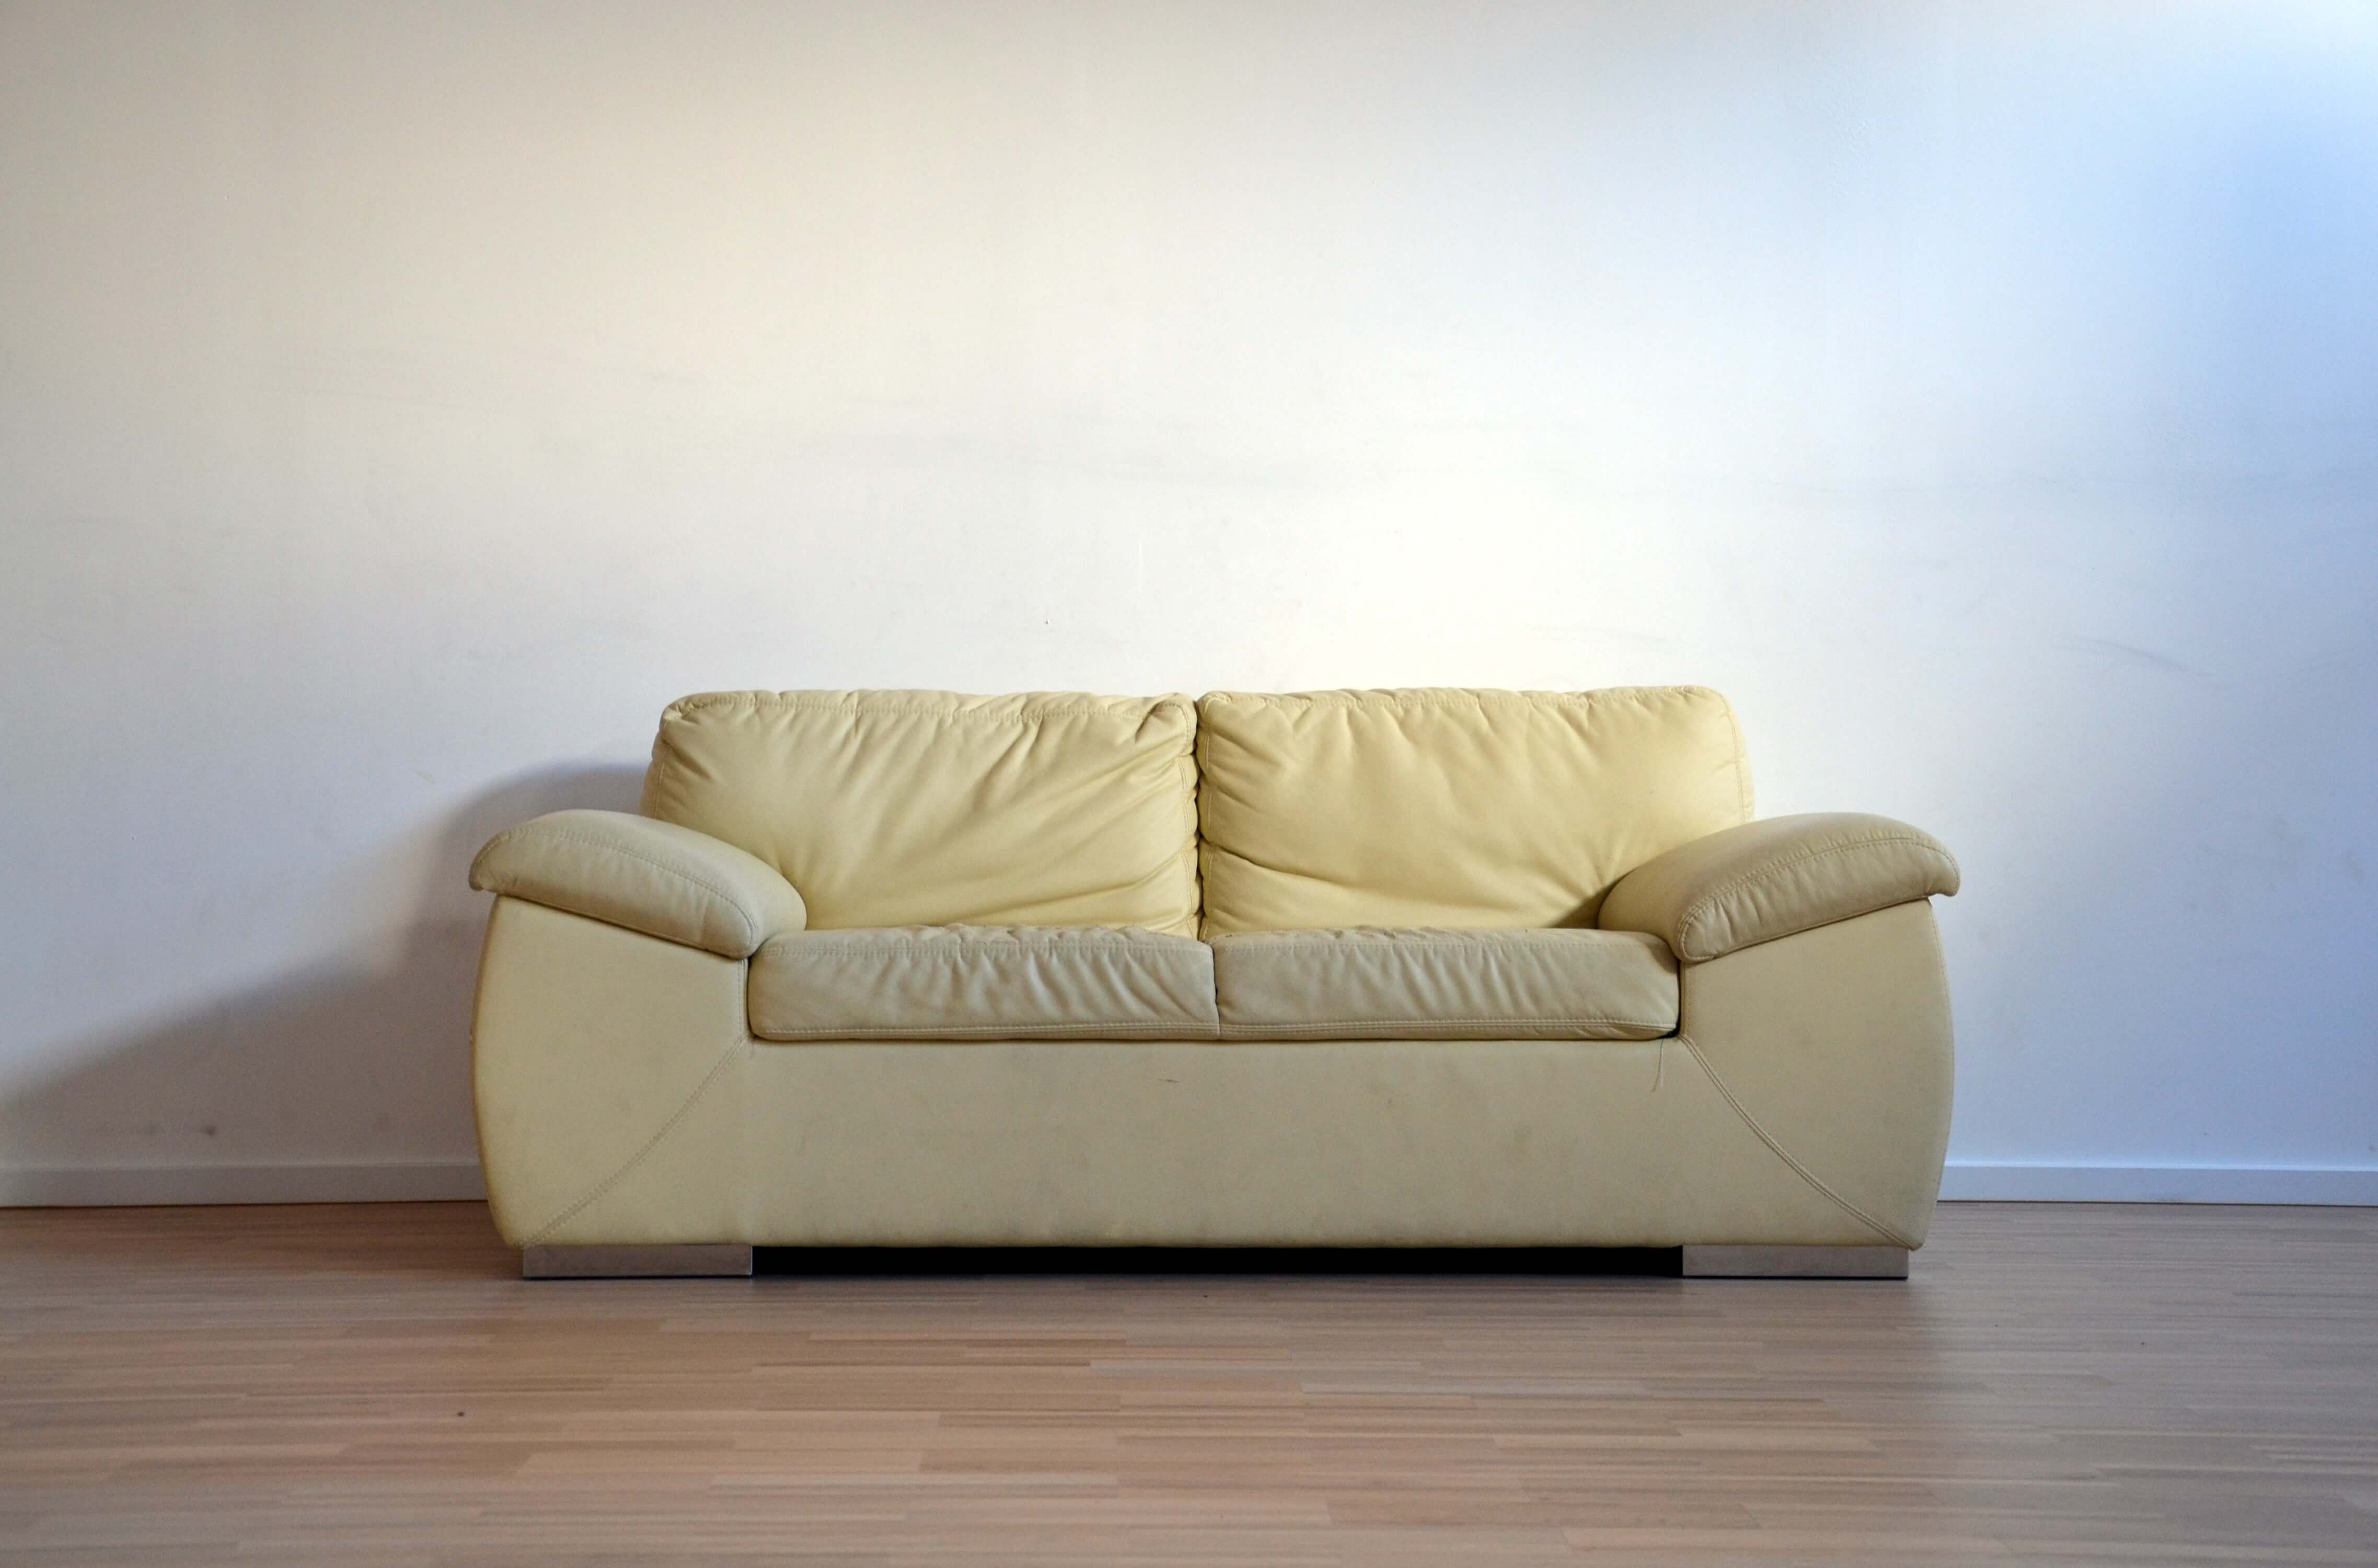 Comment bien nettoyer et entretenir son canapé en cuir ?